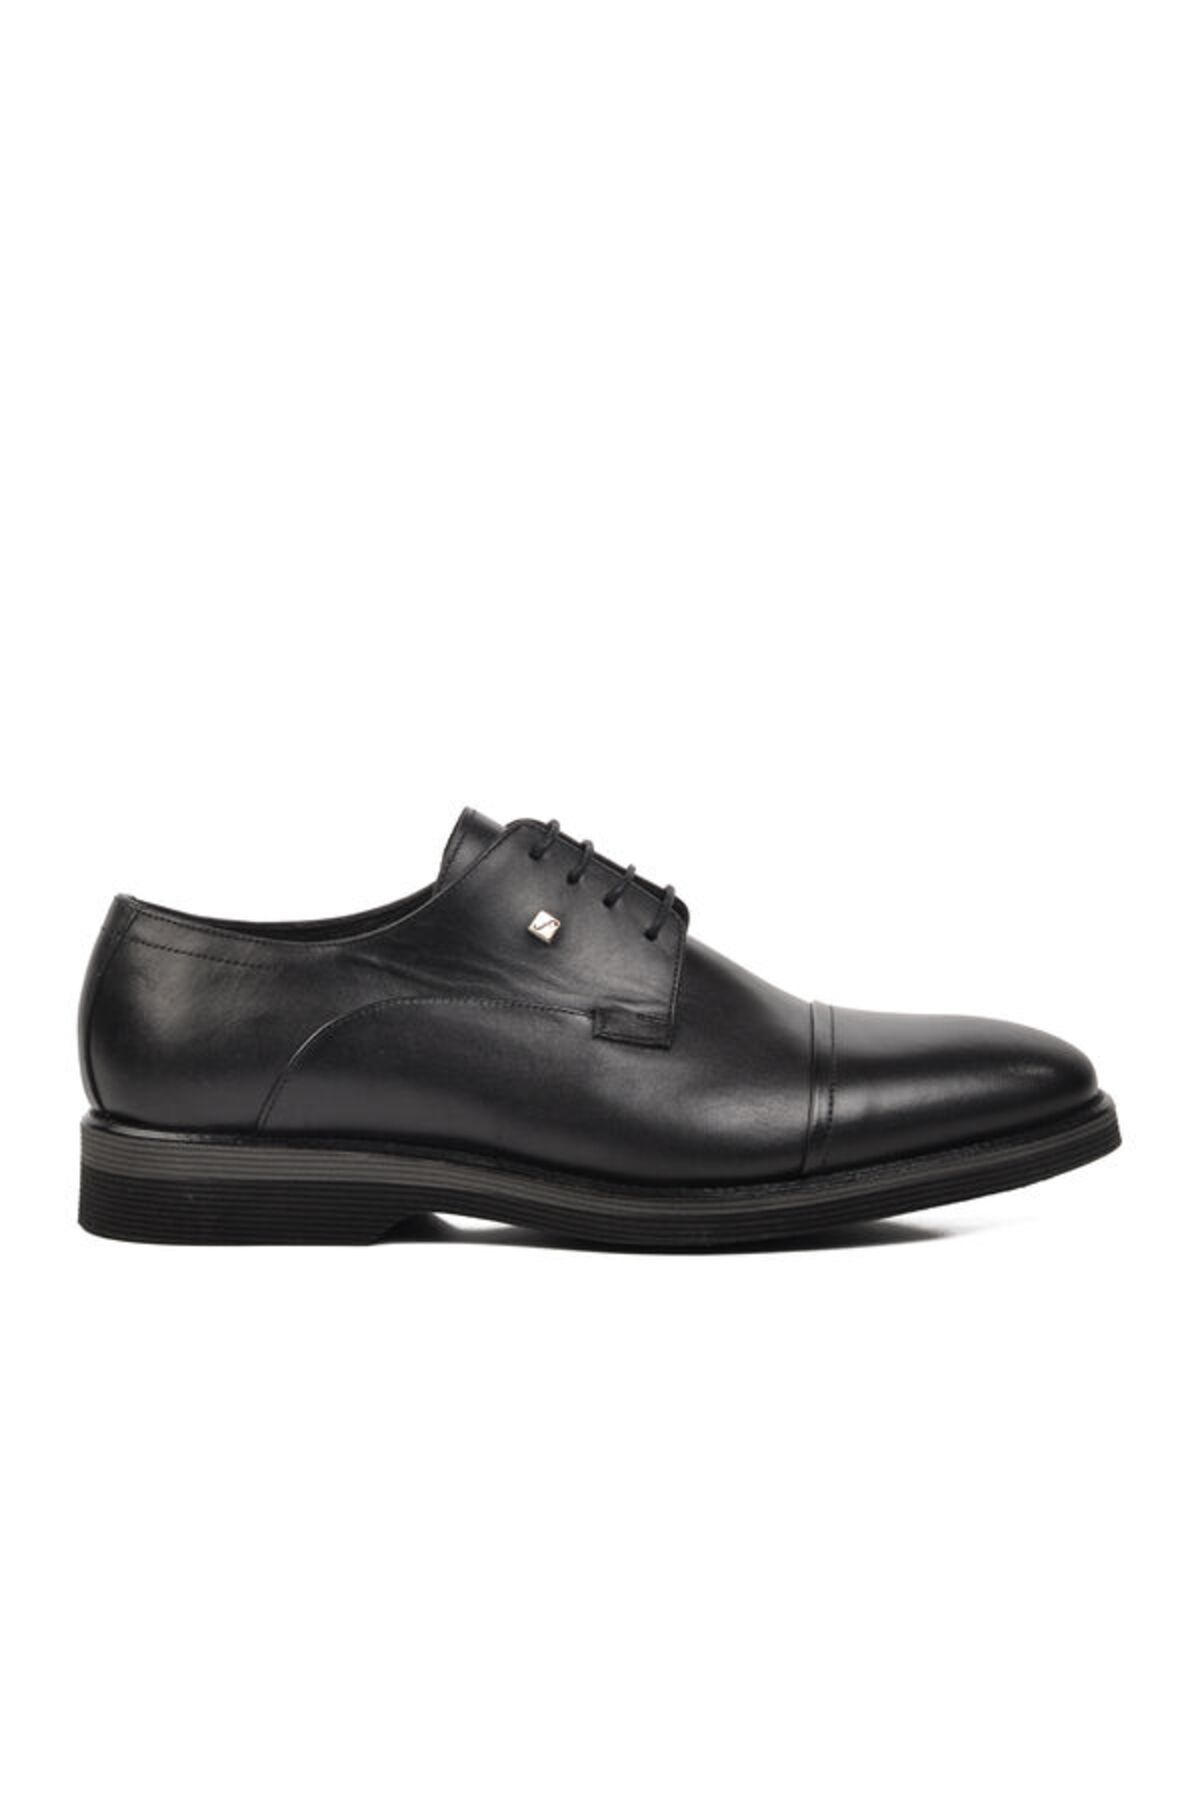 Fosco Siyah Hakiki Deri Erkek Günlük Ayakkabı